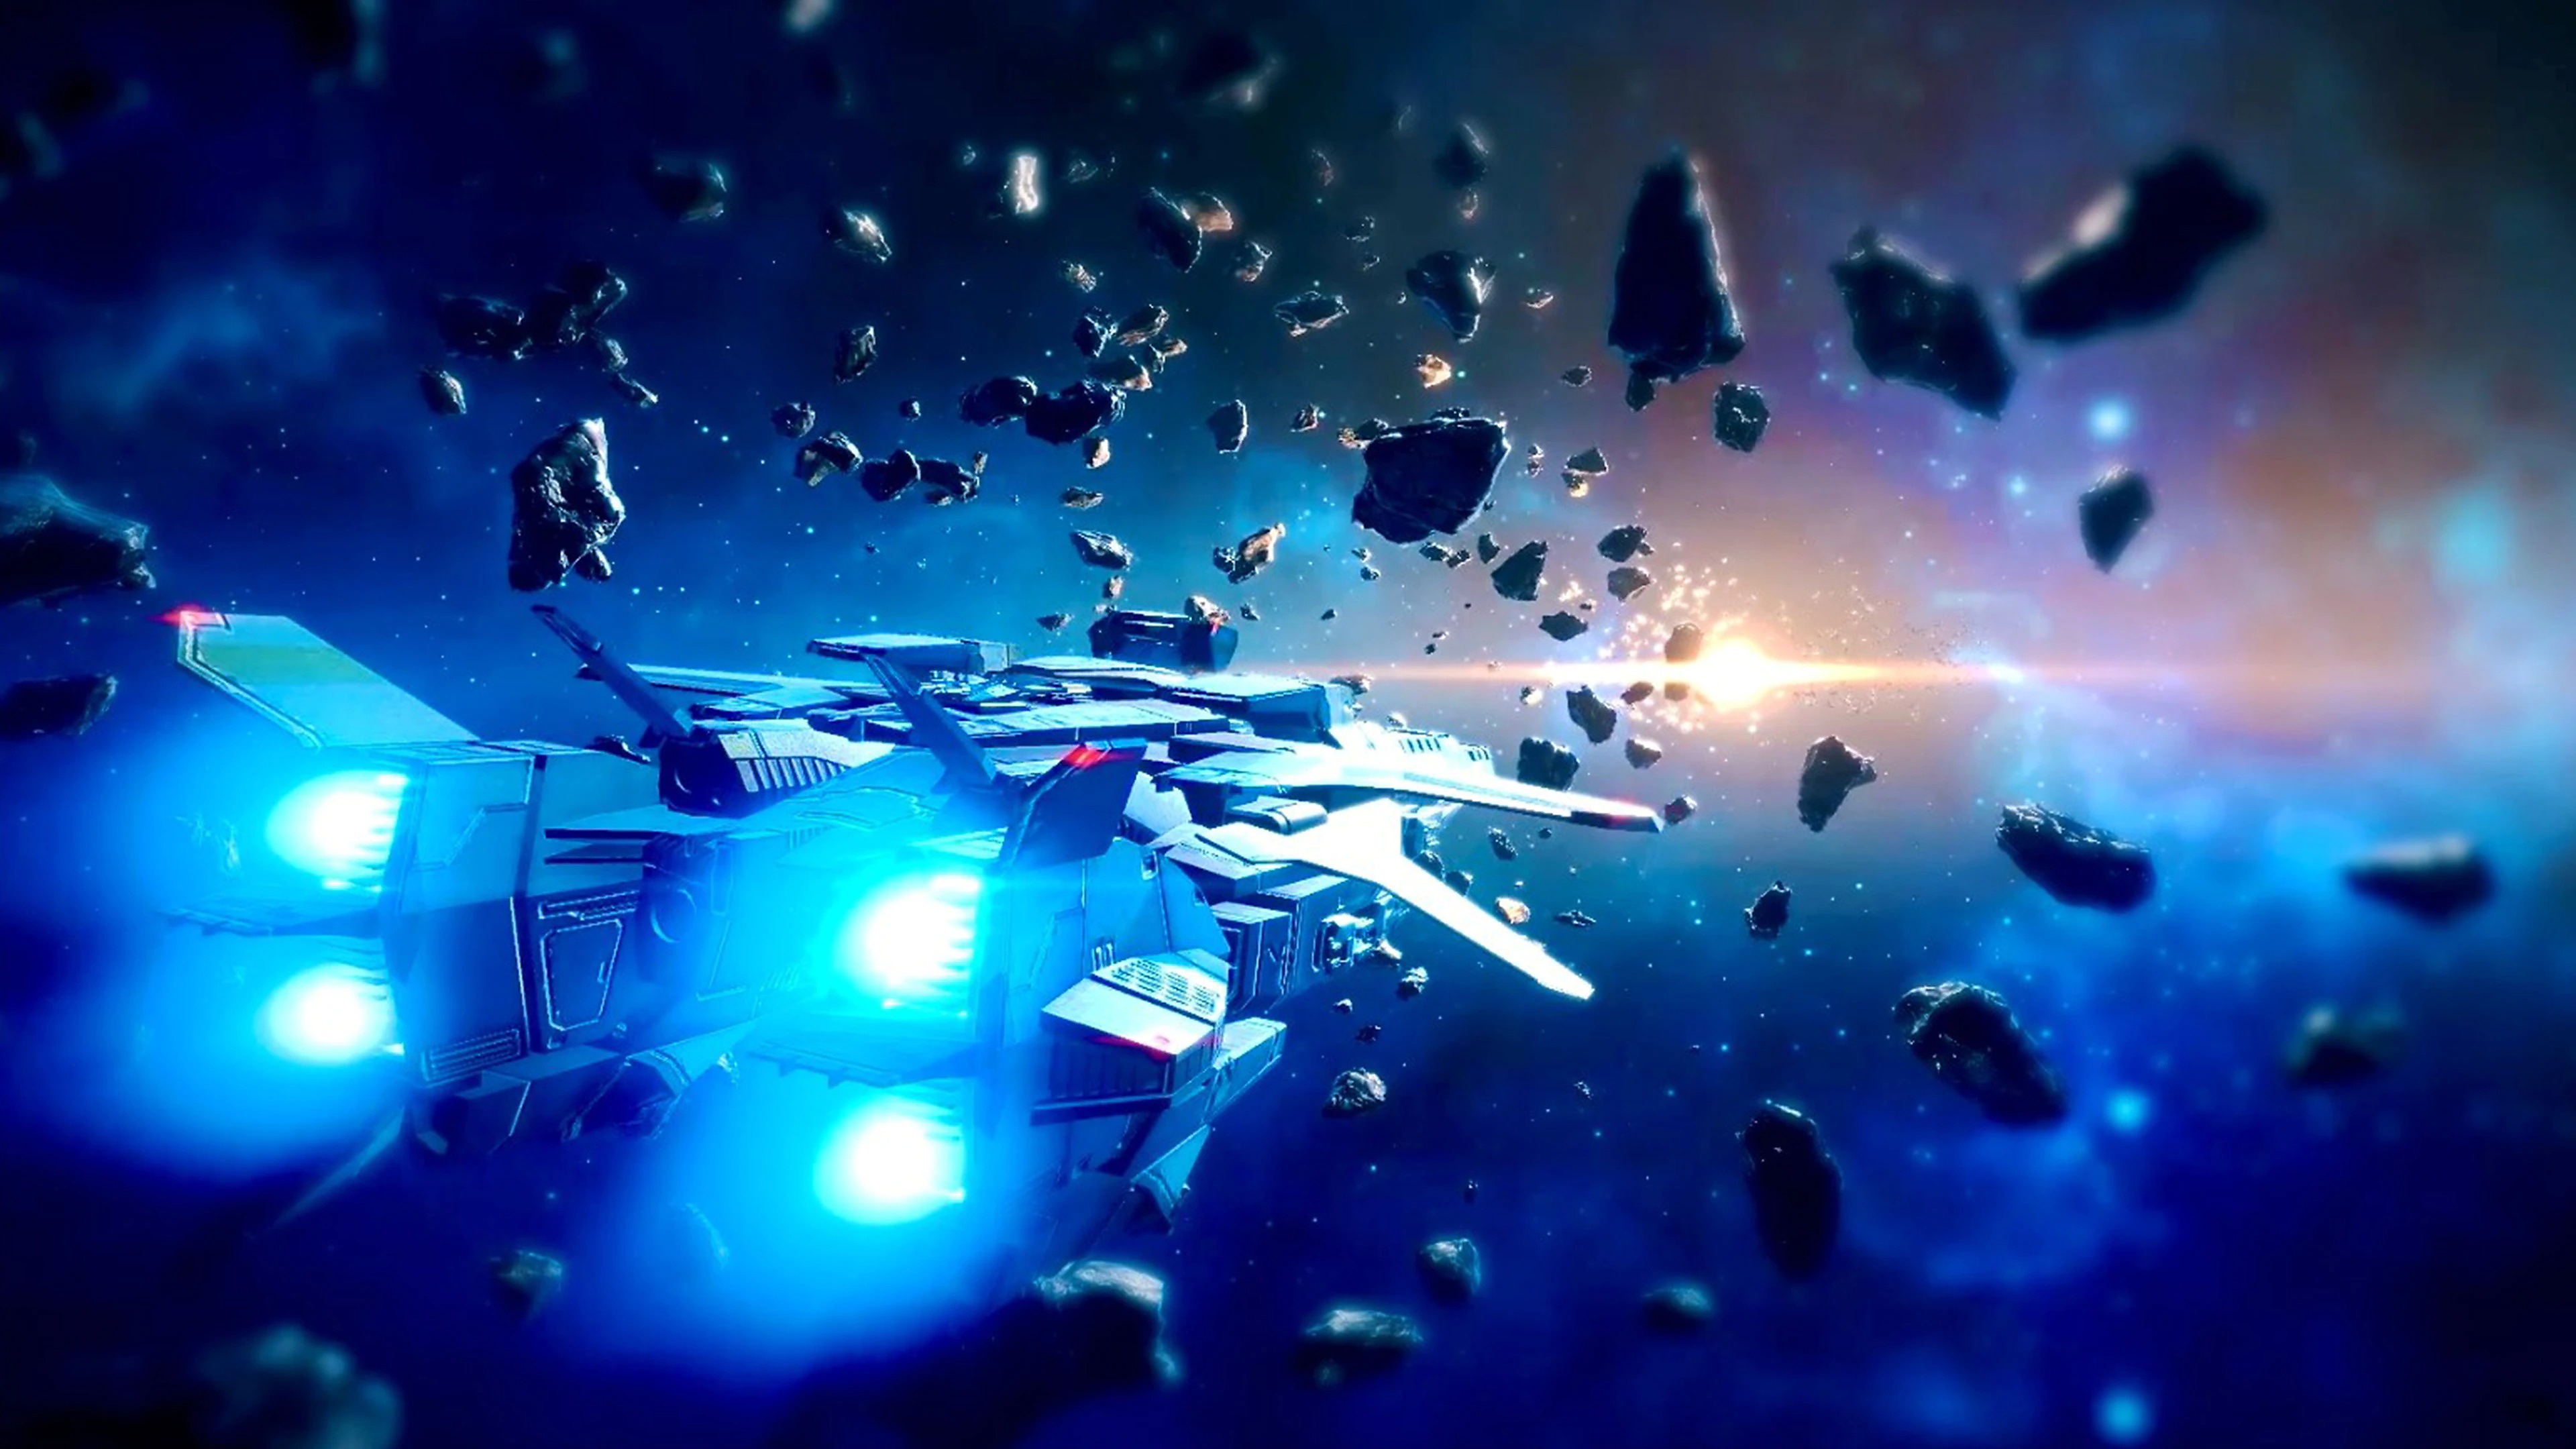 Relayer – zrzut ekranu przedstawiający statek kosmiczny lecący wśród kosmicznych skał